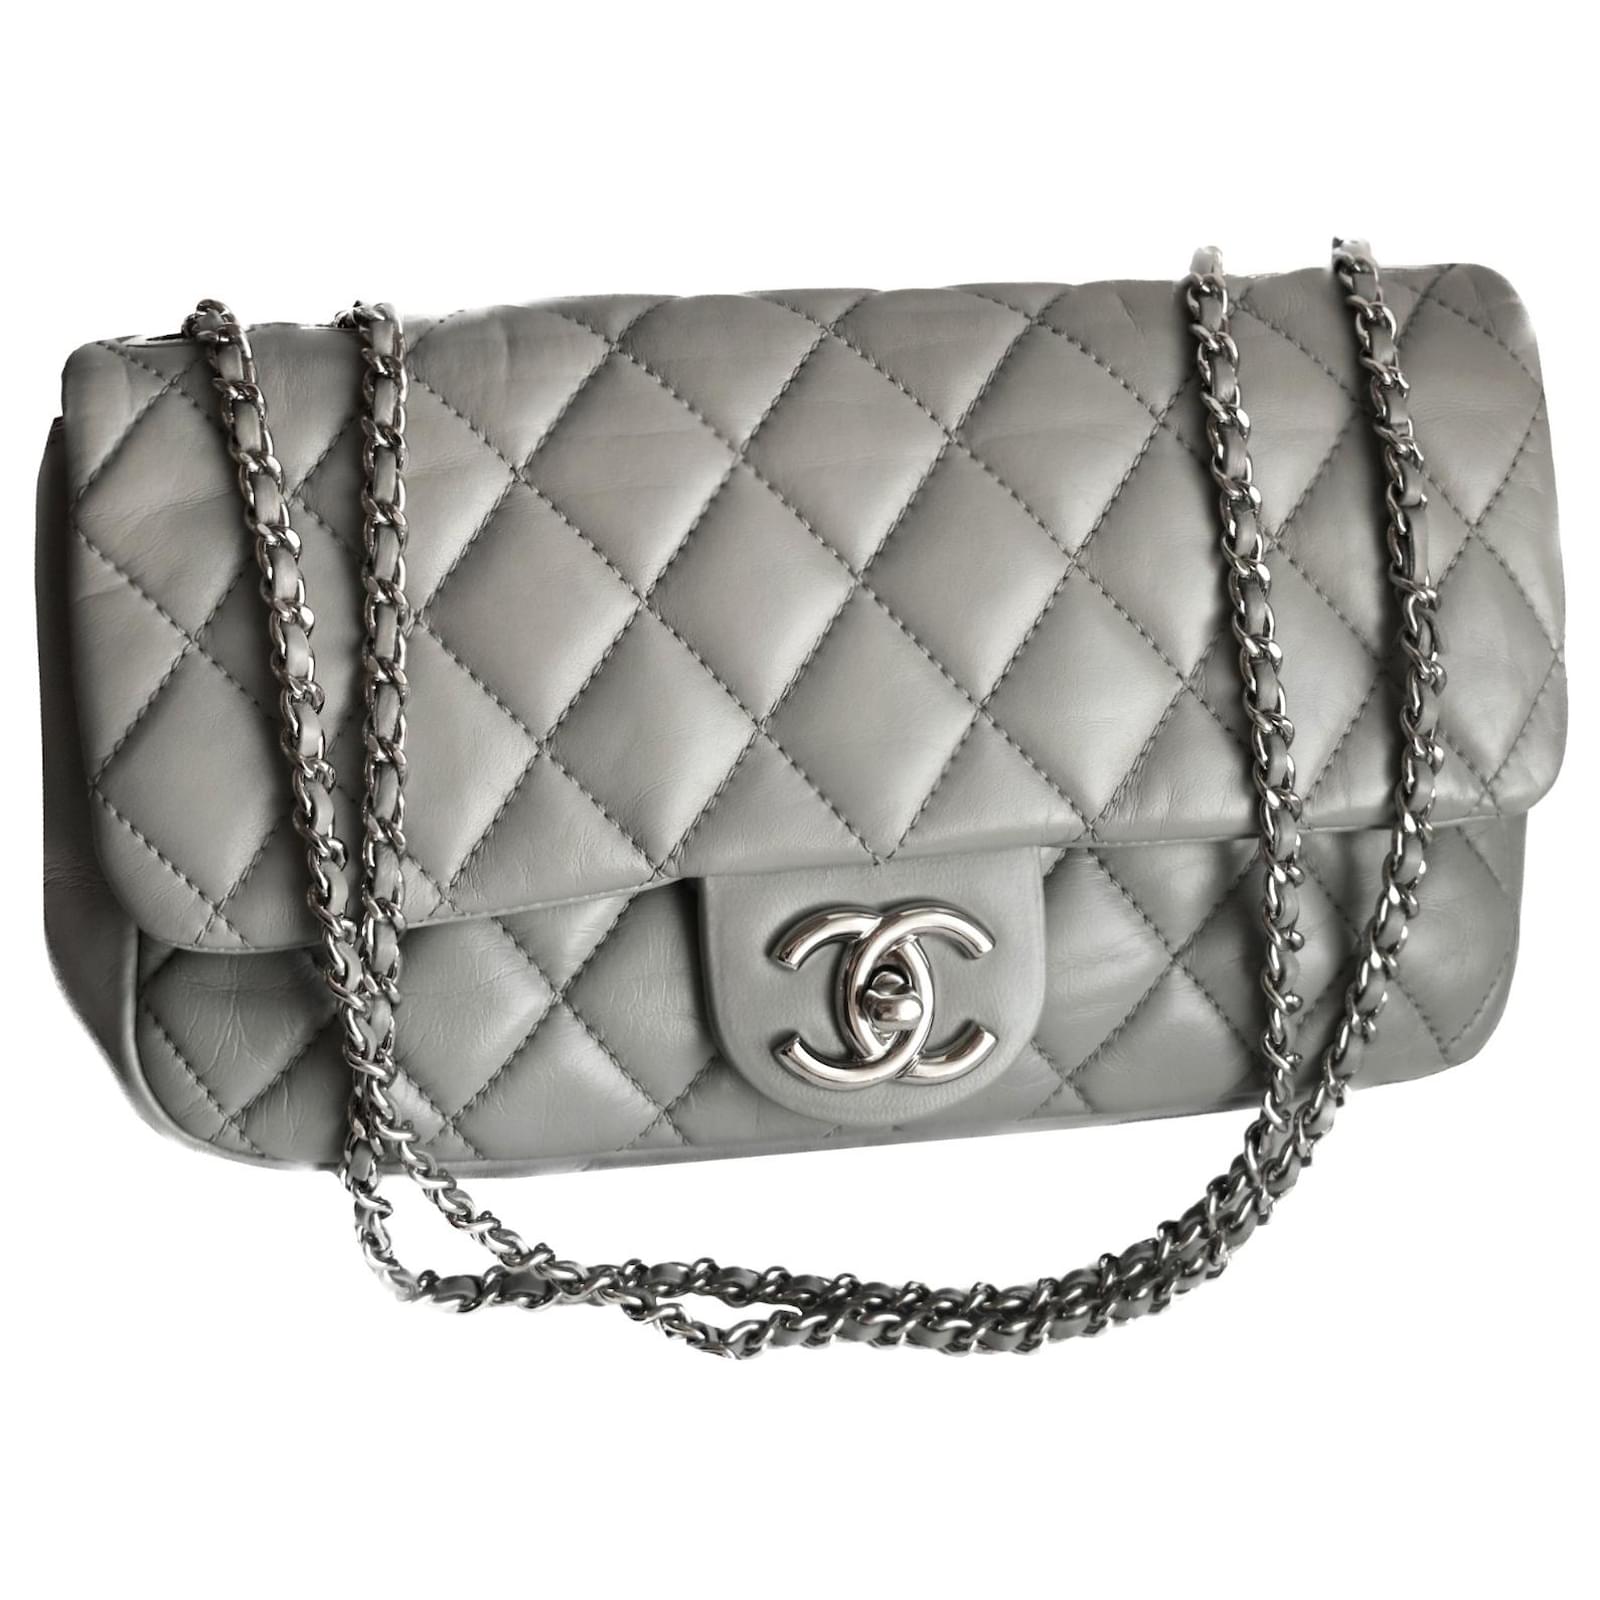 Chanel grey leather - Gem